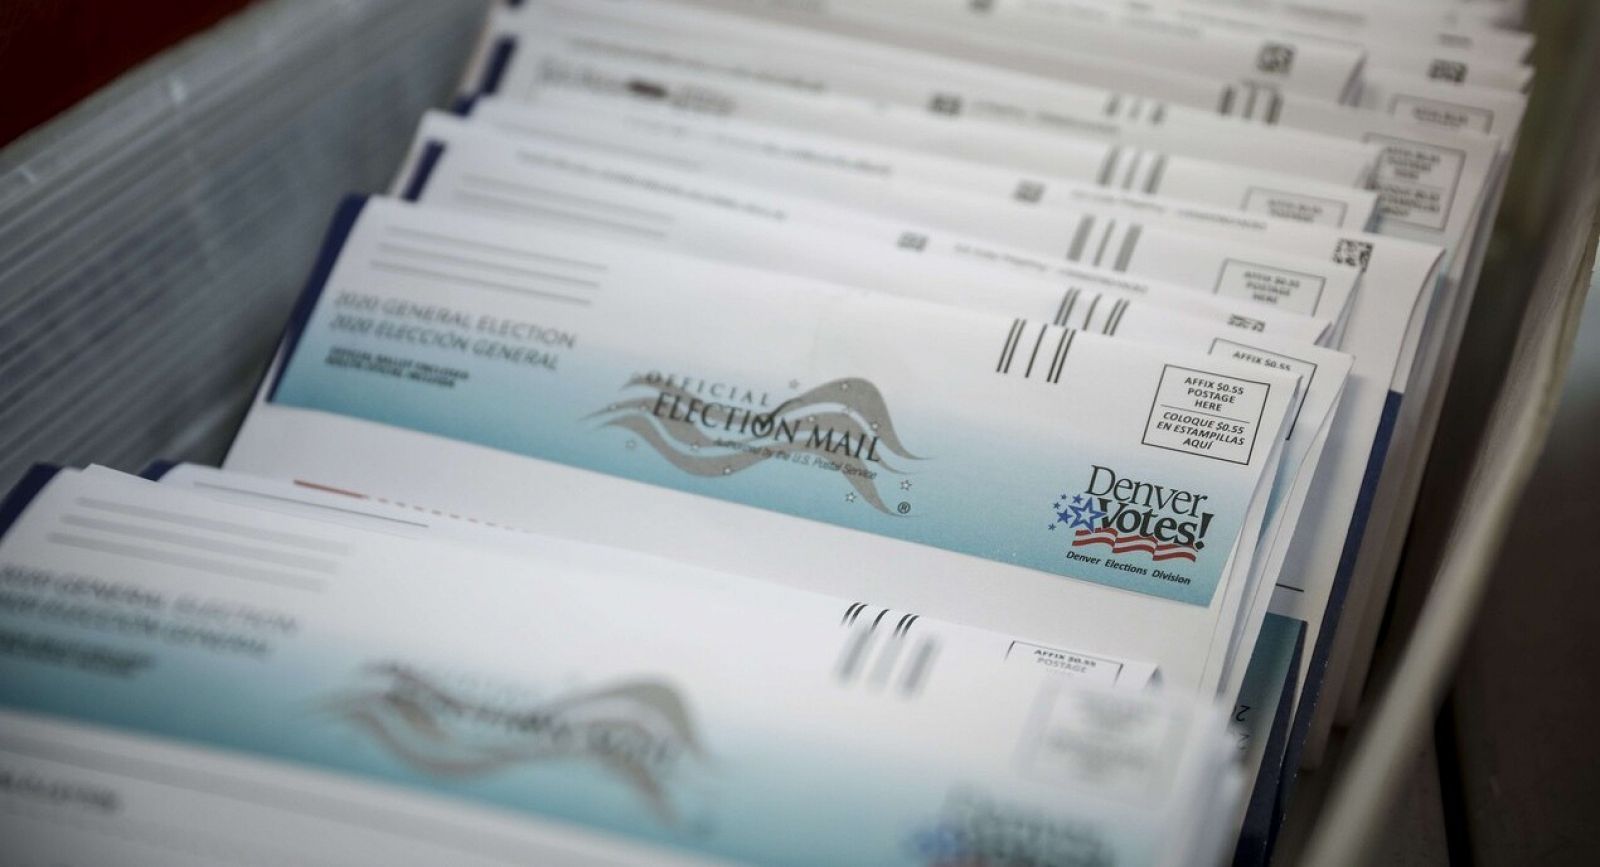 Una caja con votos emitidos por correo esperan ser validados en Denver, estado de Colorado.